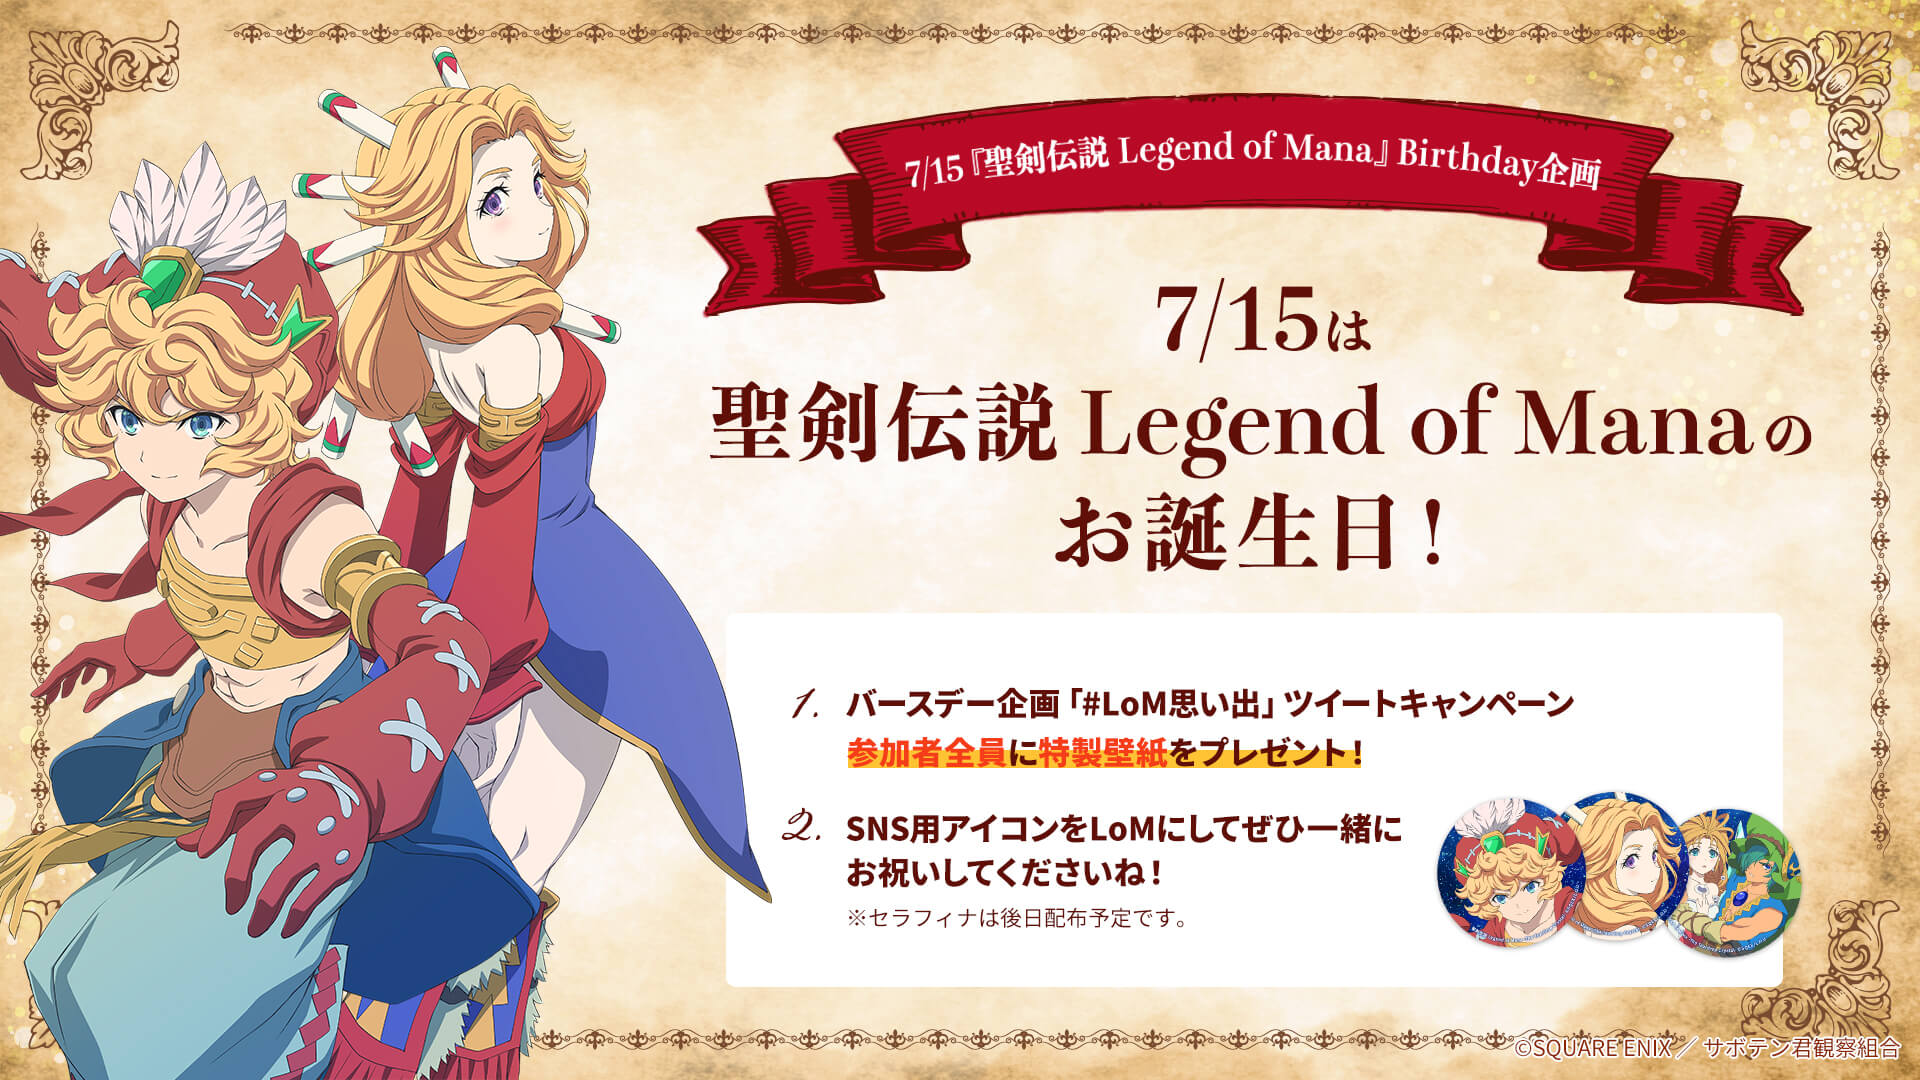 7/15『聖剣伝説 Legend of Mana』Birthday企画「#LoM思い出」ツイートキャンペーン